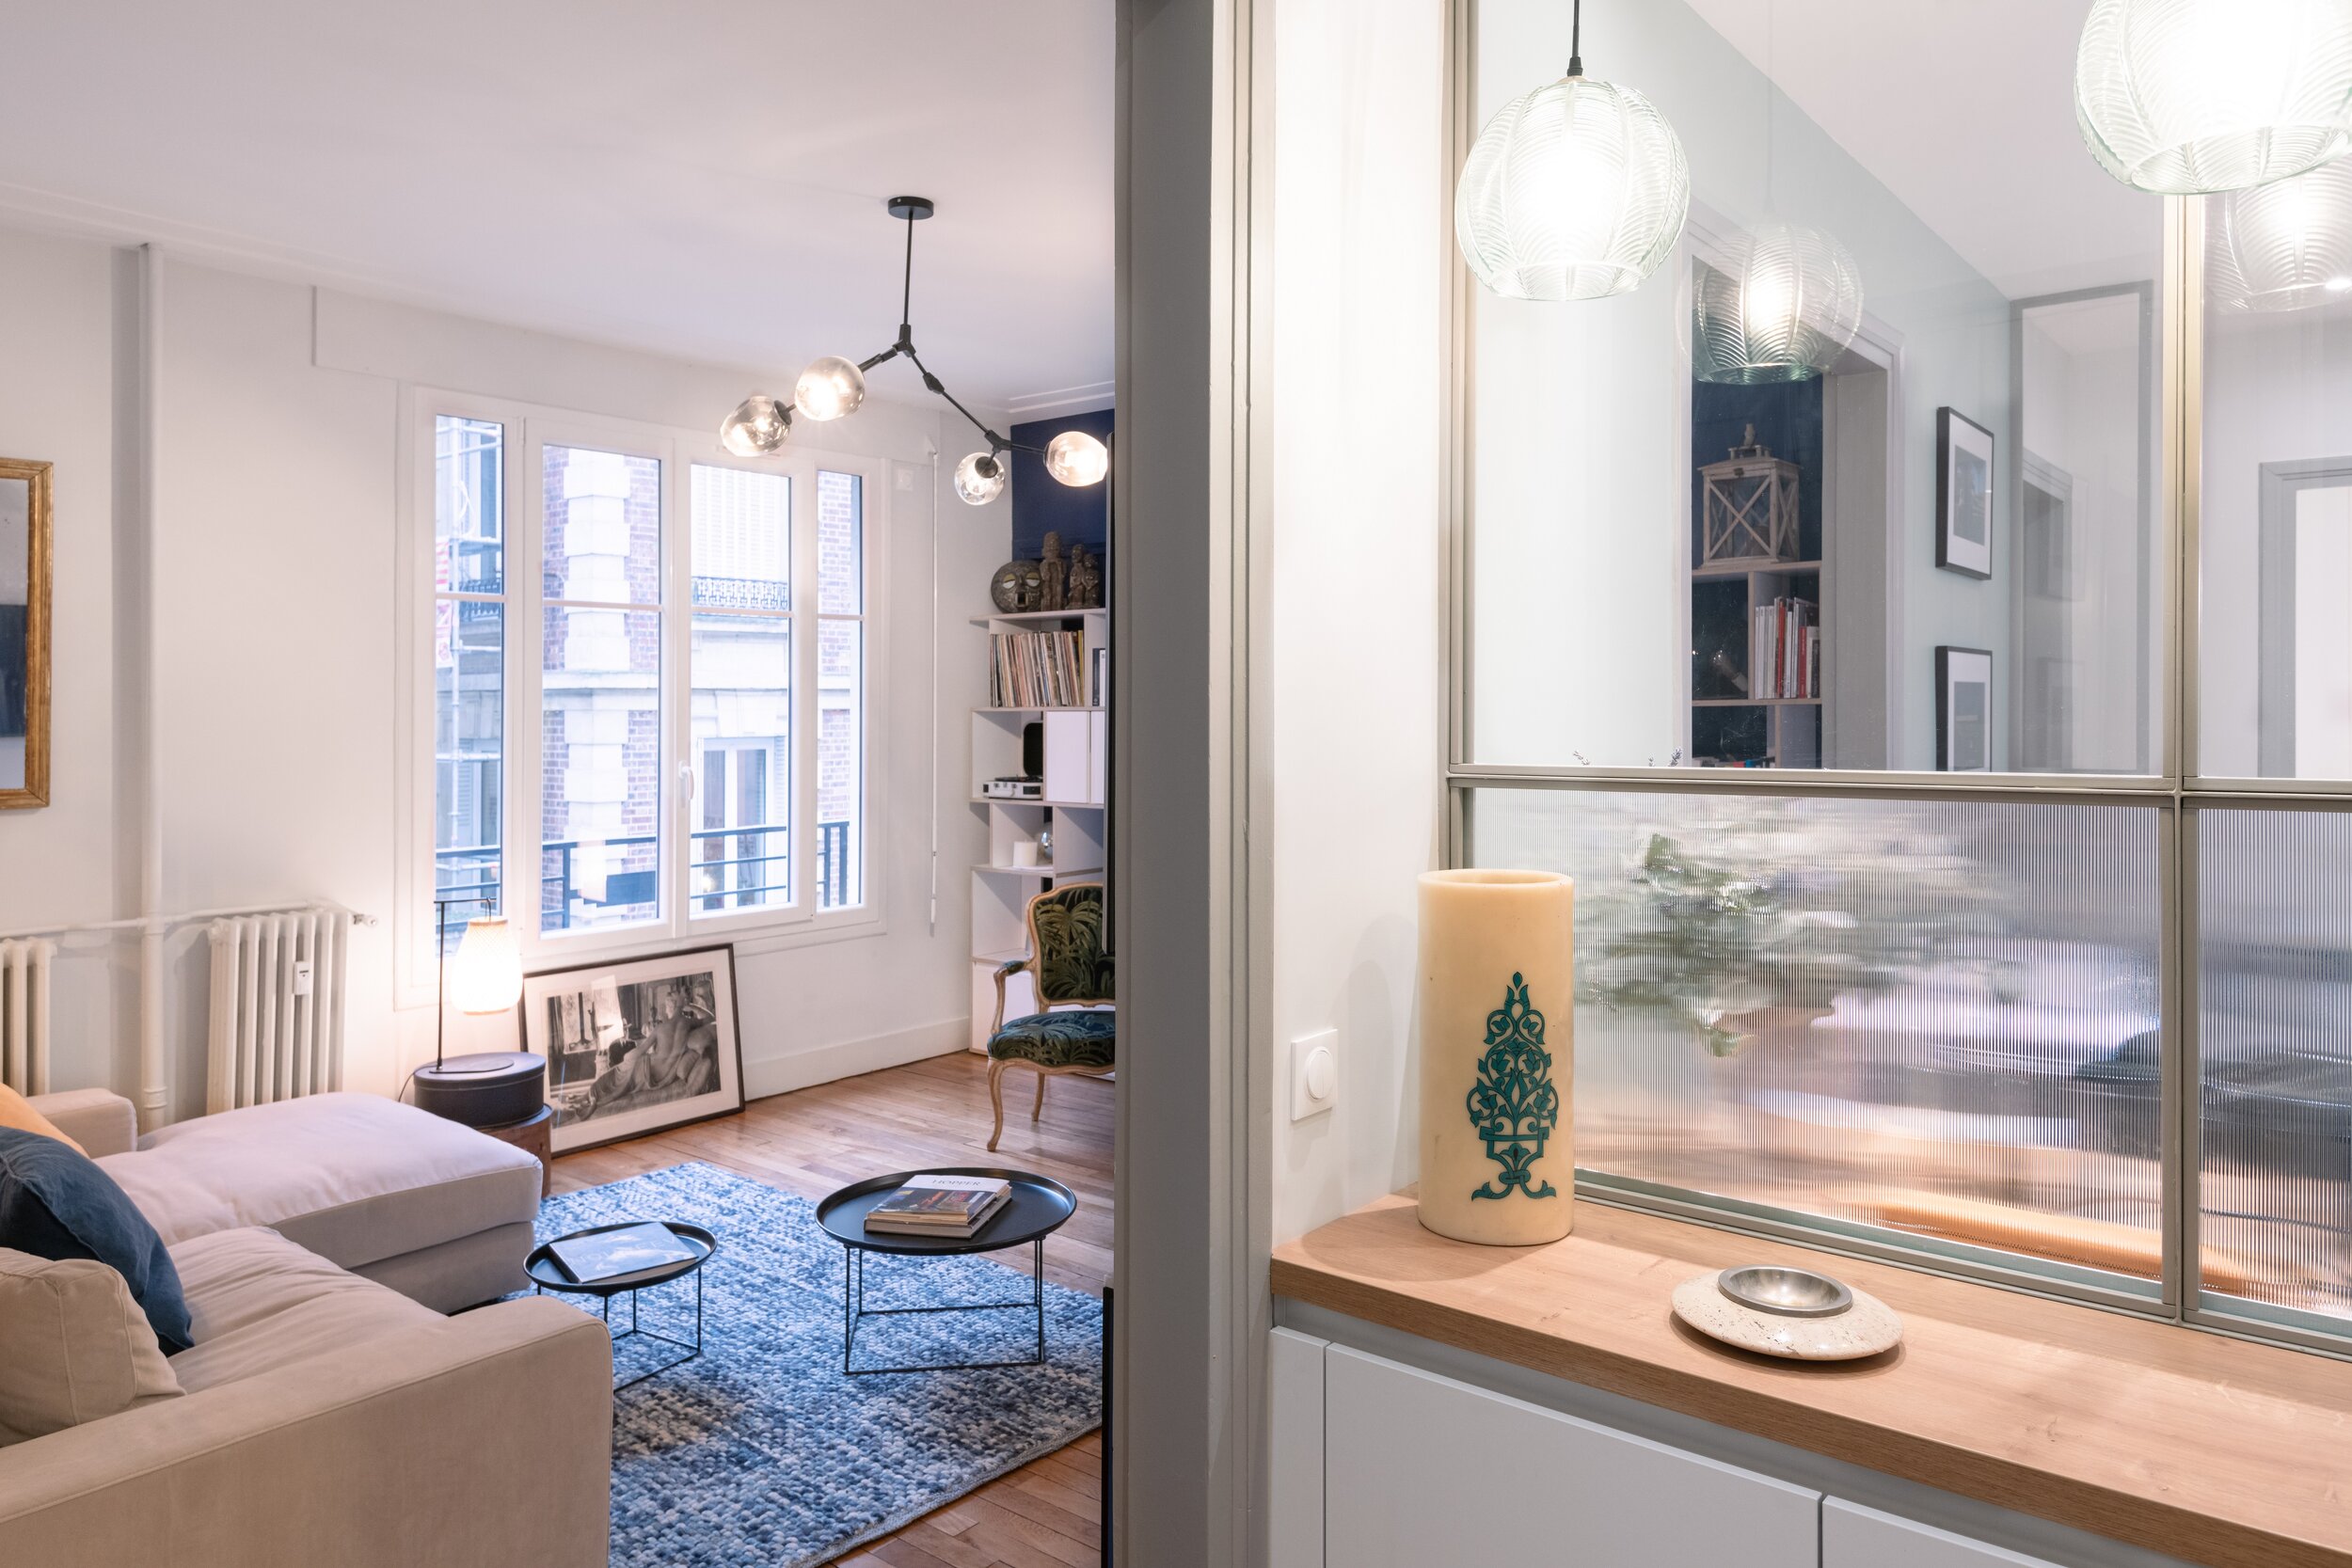 Architecture intérieure et décoration contemporaine appartement ancien  Paris — Bulles & Taille-crayon